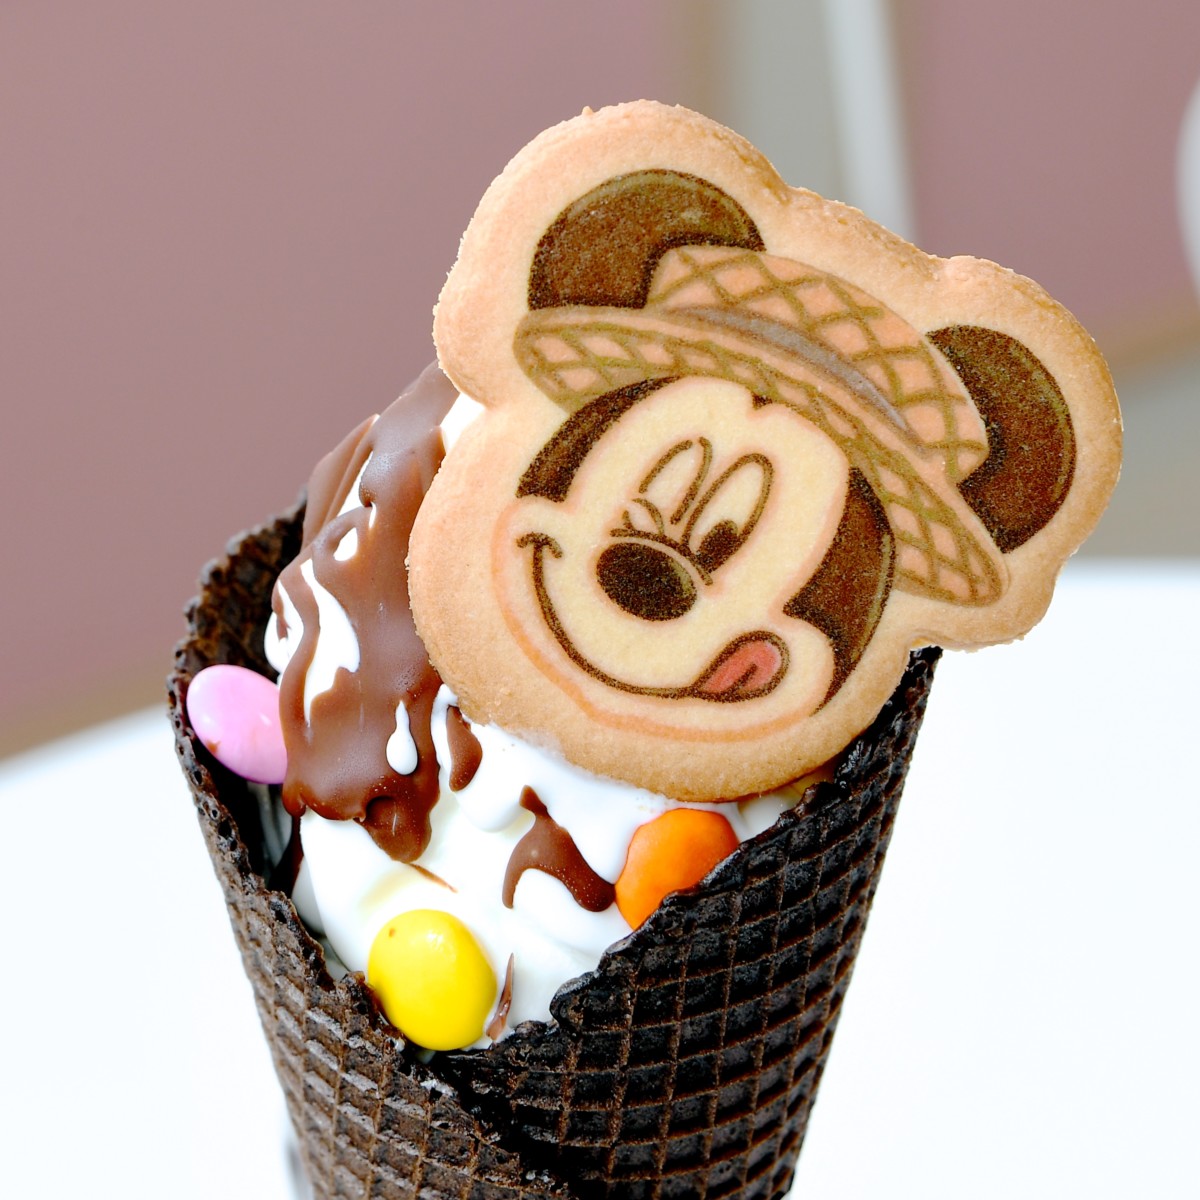 ポップでかわいいトッピング 東京ディズニーランド Pink Pop Paradise ソフトクリーム チョコレート